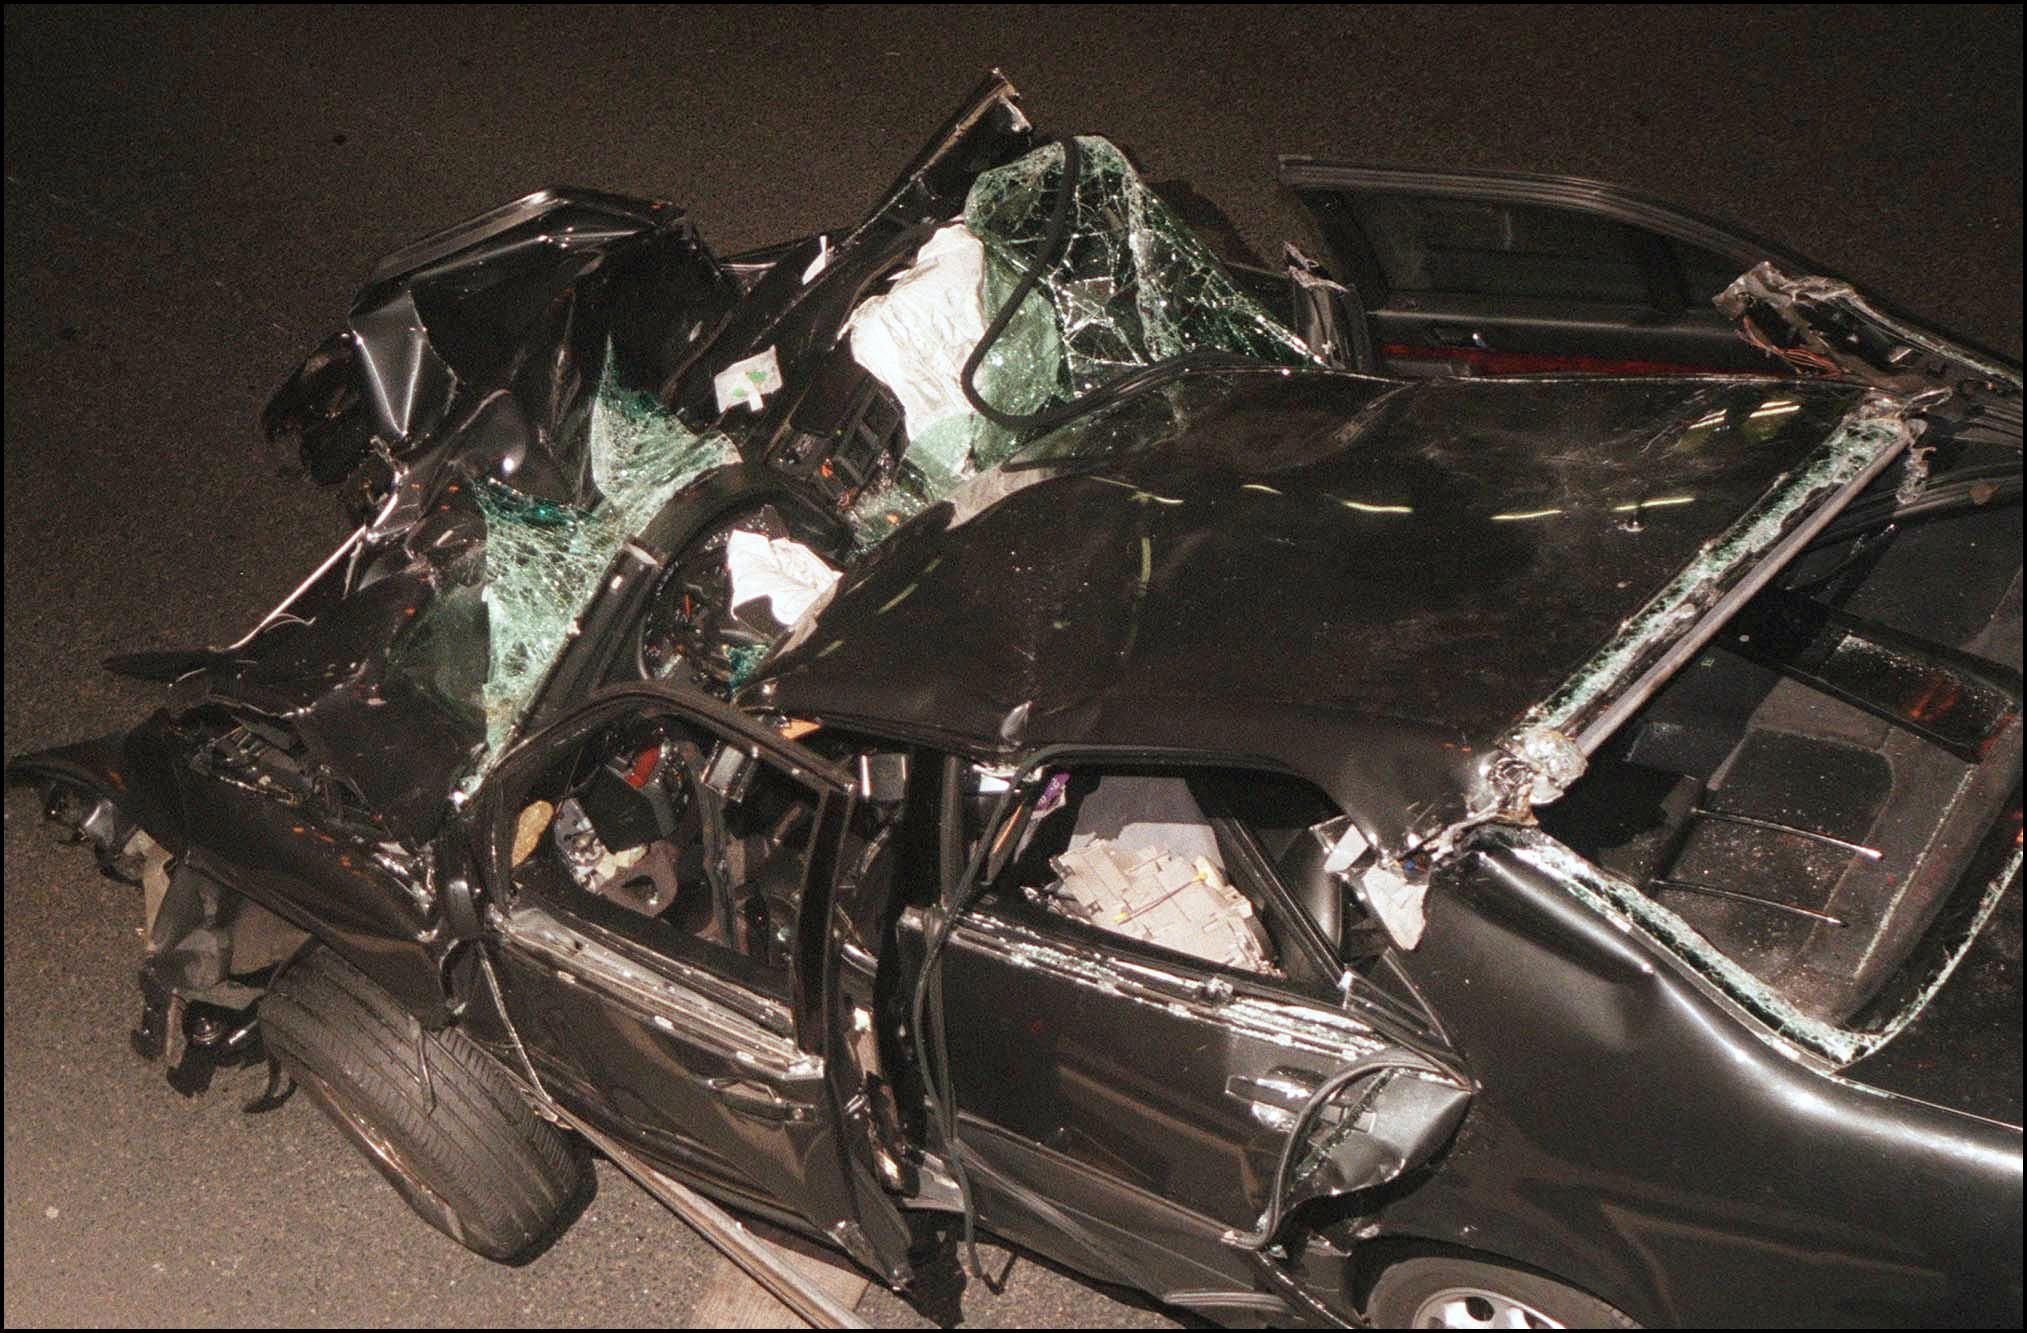 Das Wrack von Prinzessin Dianas Auto im Alma-Tunnel von Paris nach ihrem tödlichen Autounfall am 21. August 1997 | Quelle: Getty Images